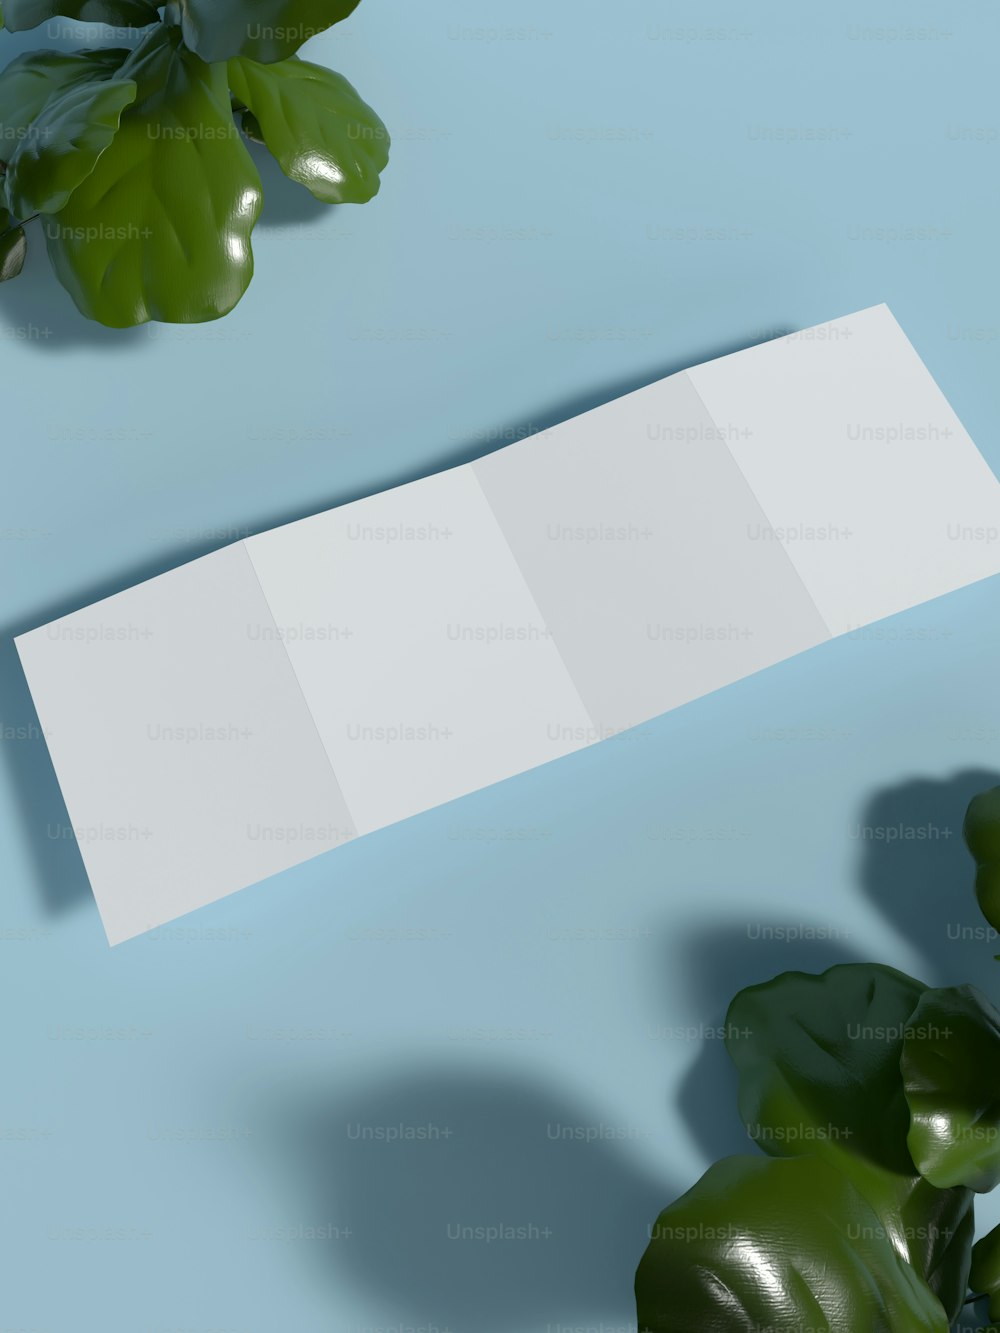 Un pedazo de papel en blanco junto a una planta en maceta